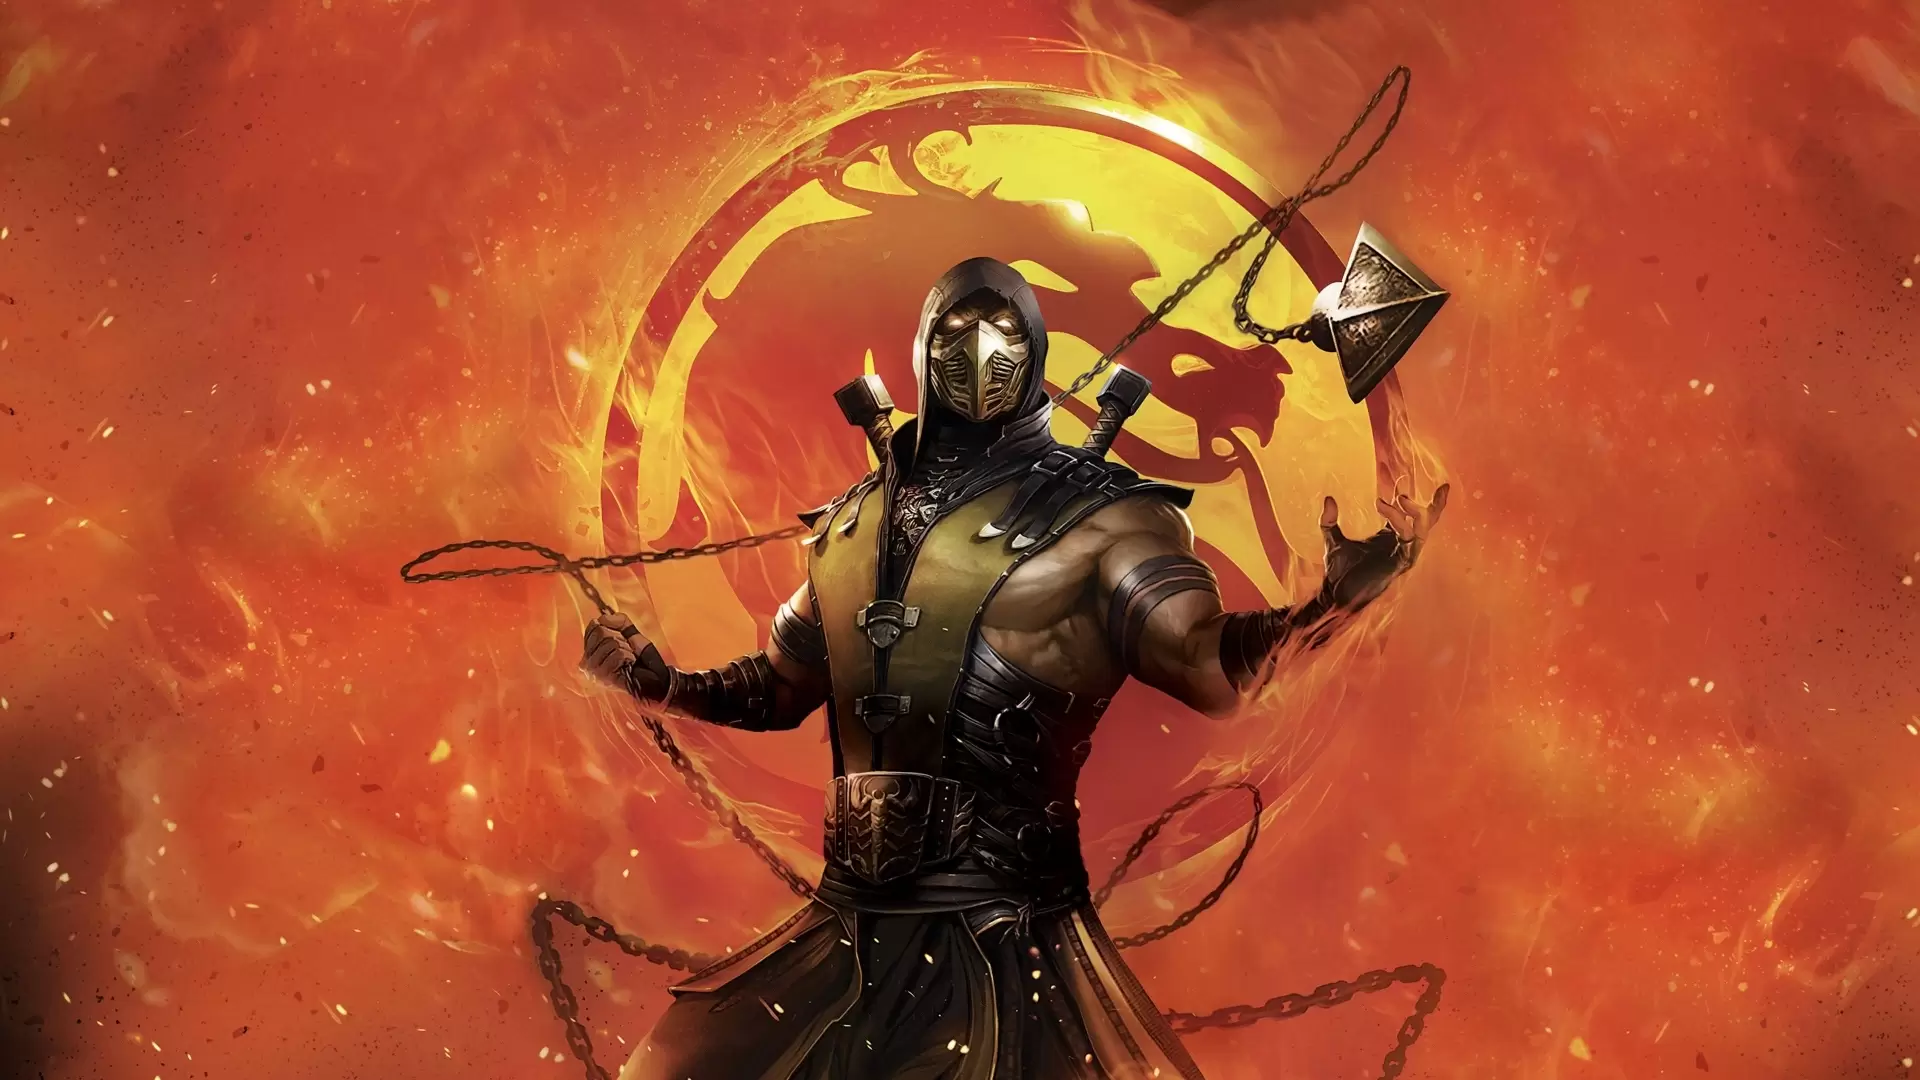 دانلود انیمیشن Mortal Kombat Legends: Scorpions Revenge 2020 (افسانه مورتال کامبت: انتقام اسکورپیون) با زیرنویس فارسی و تماشای آنلاین